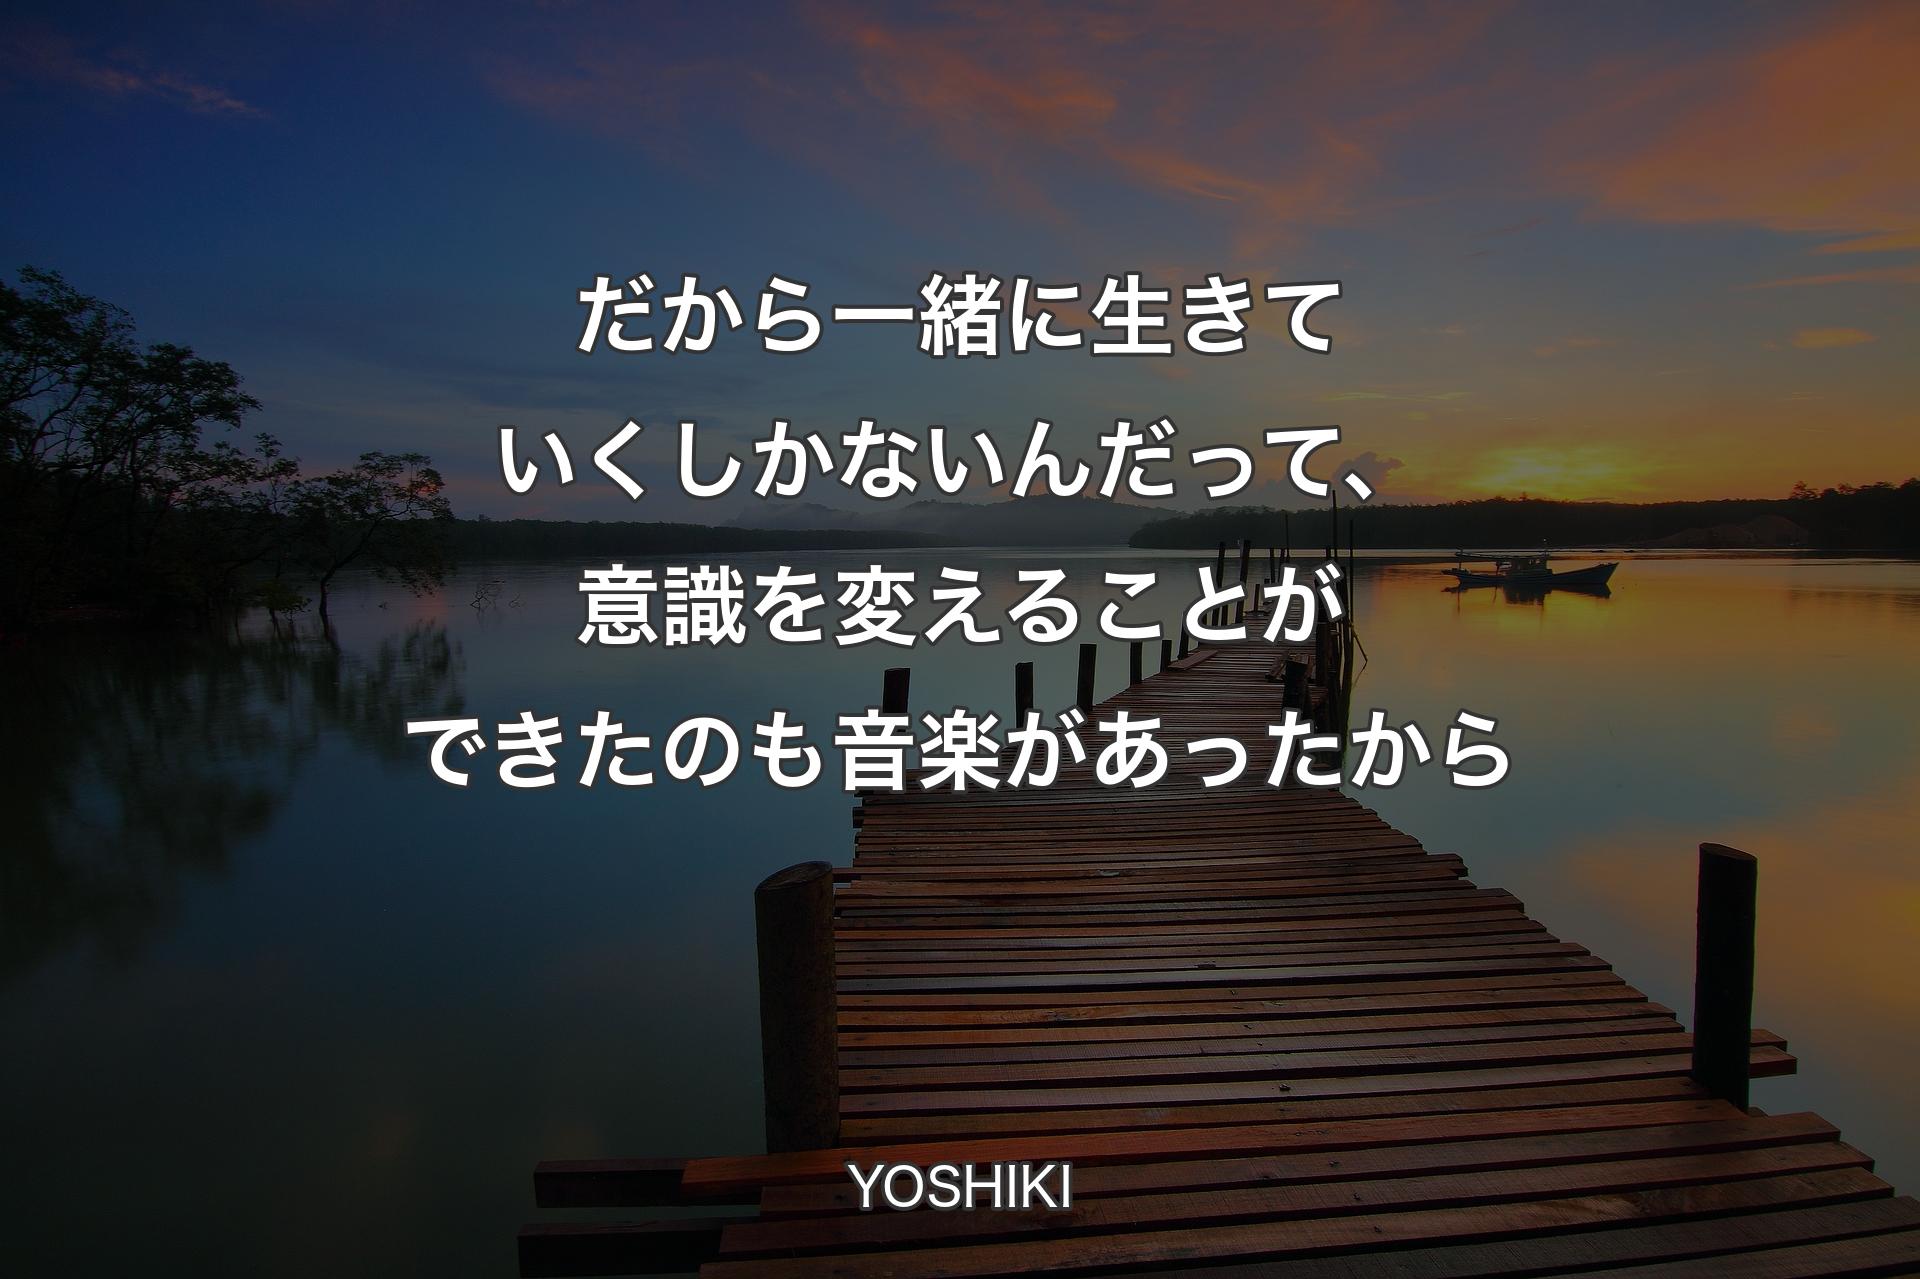 だから一緒に生きていくしかないんだって、意識を変えることができたのも音楽があったから - YOSHIKI